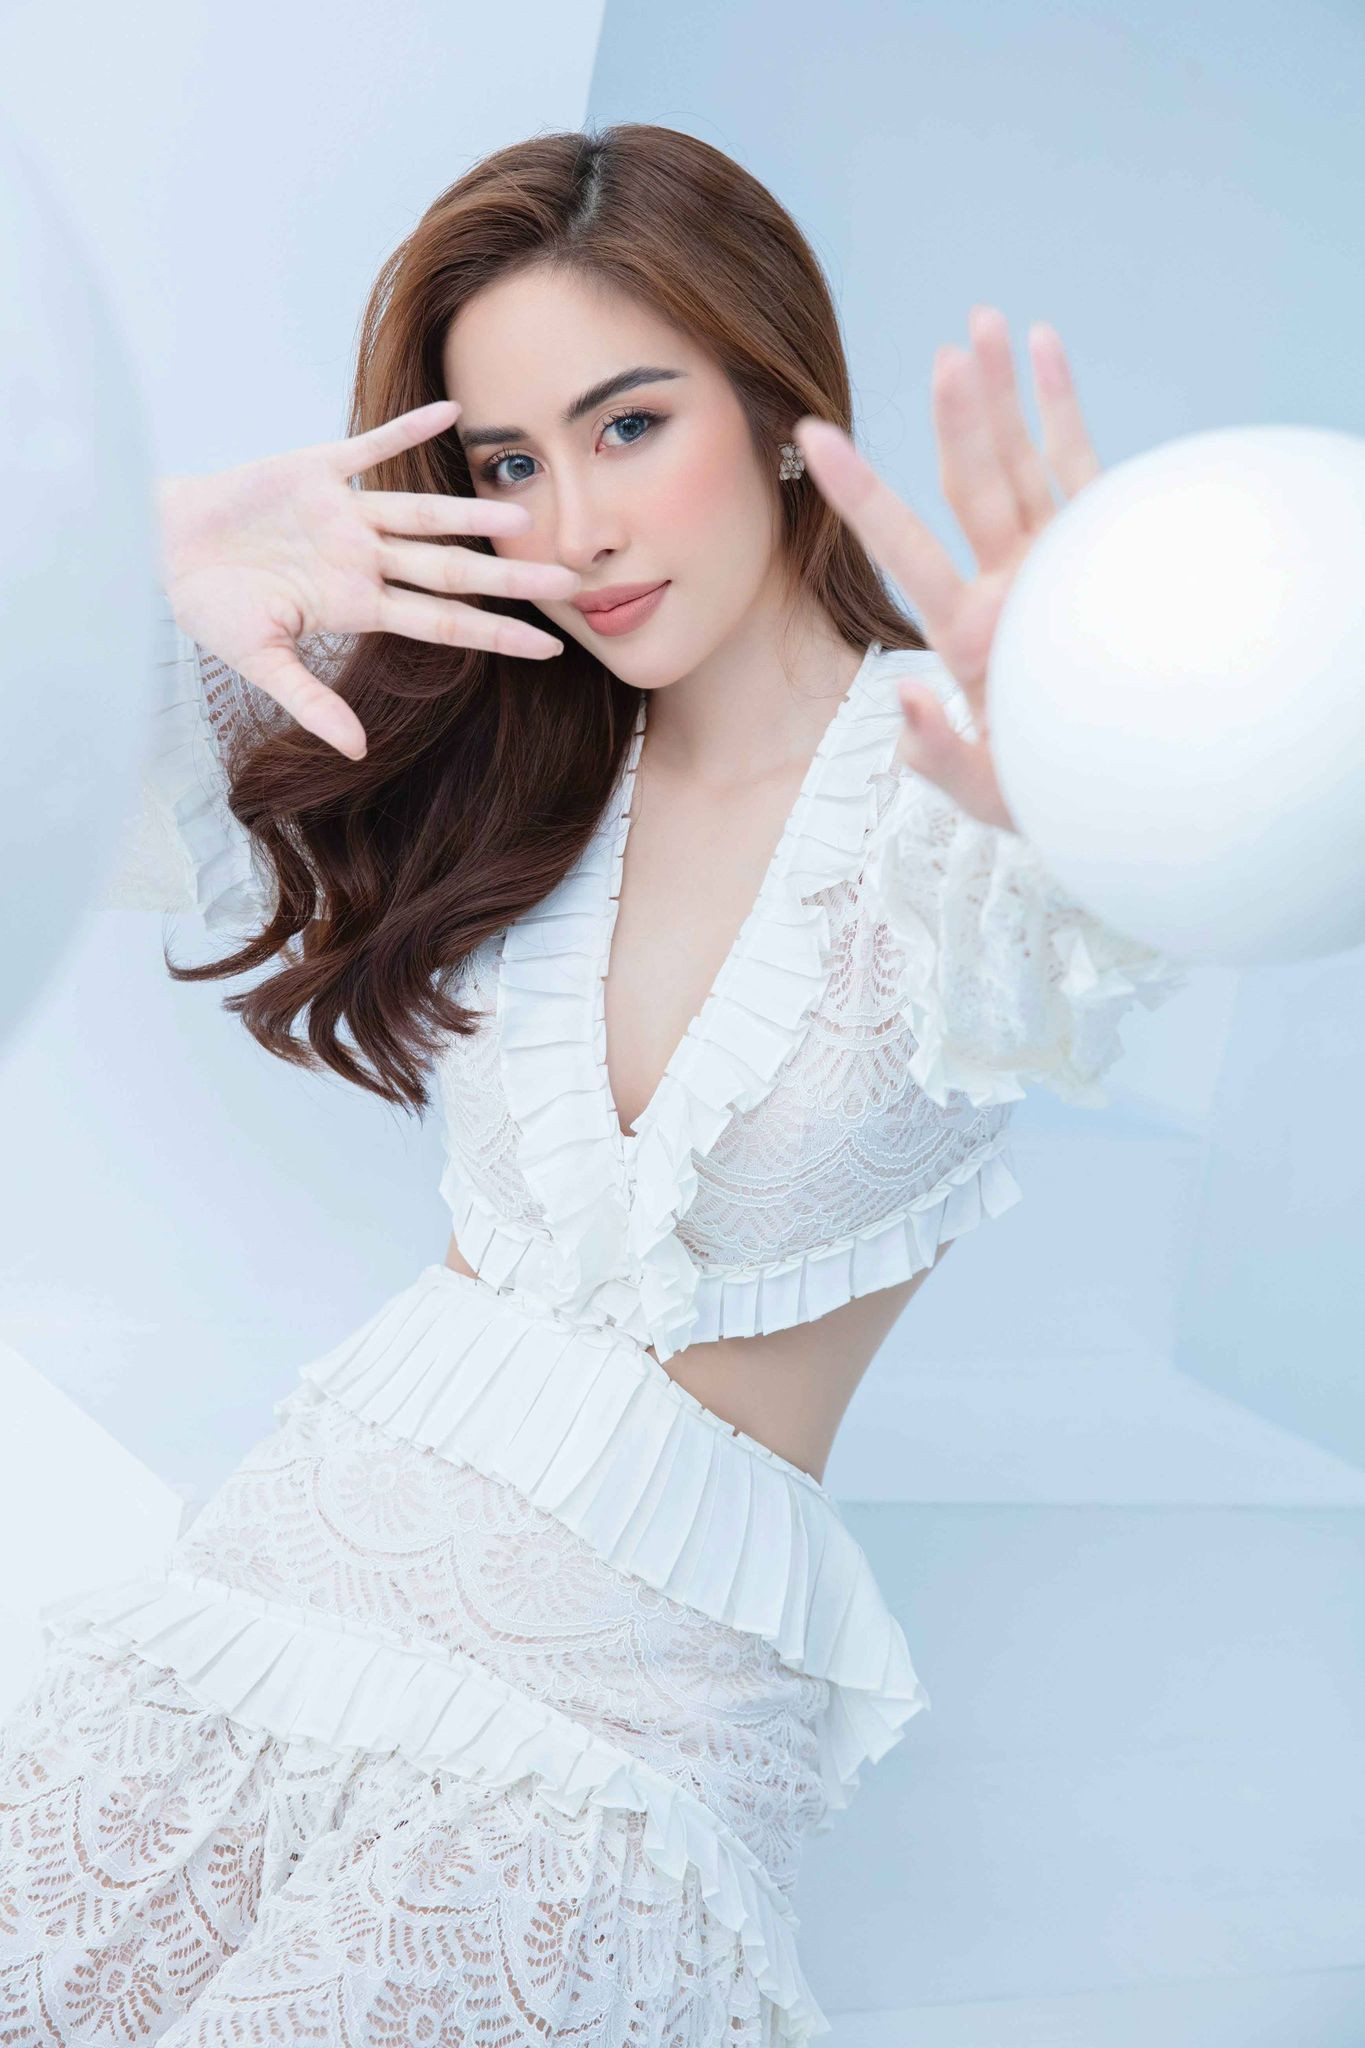 Hoa hậu Phan Ngọc Hân gợi cảm trong bộ ảnh mới